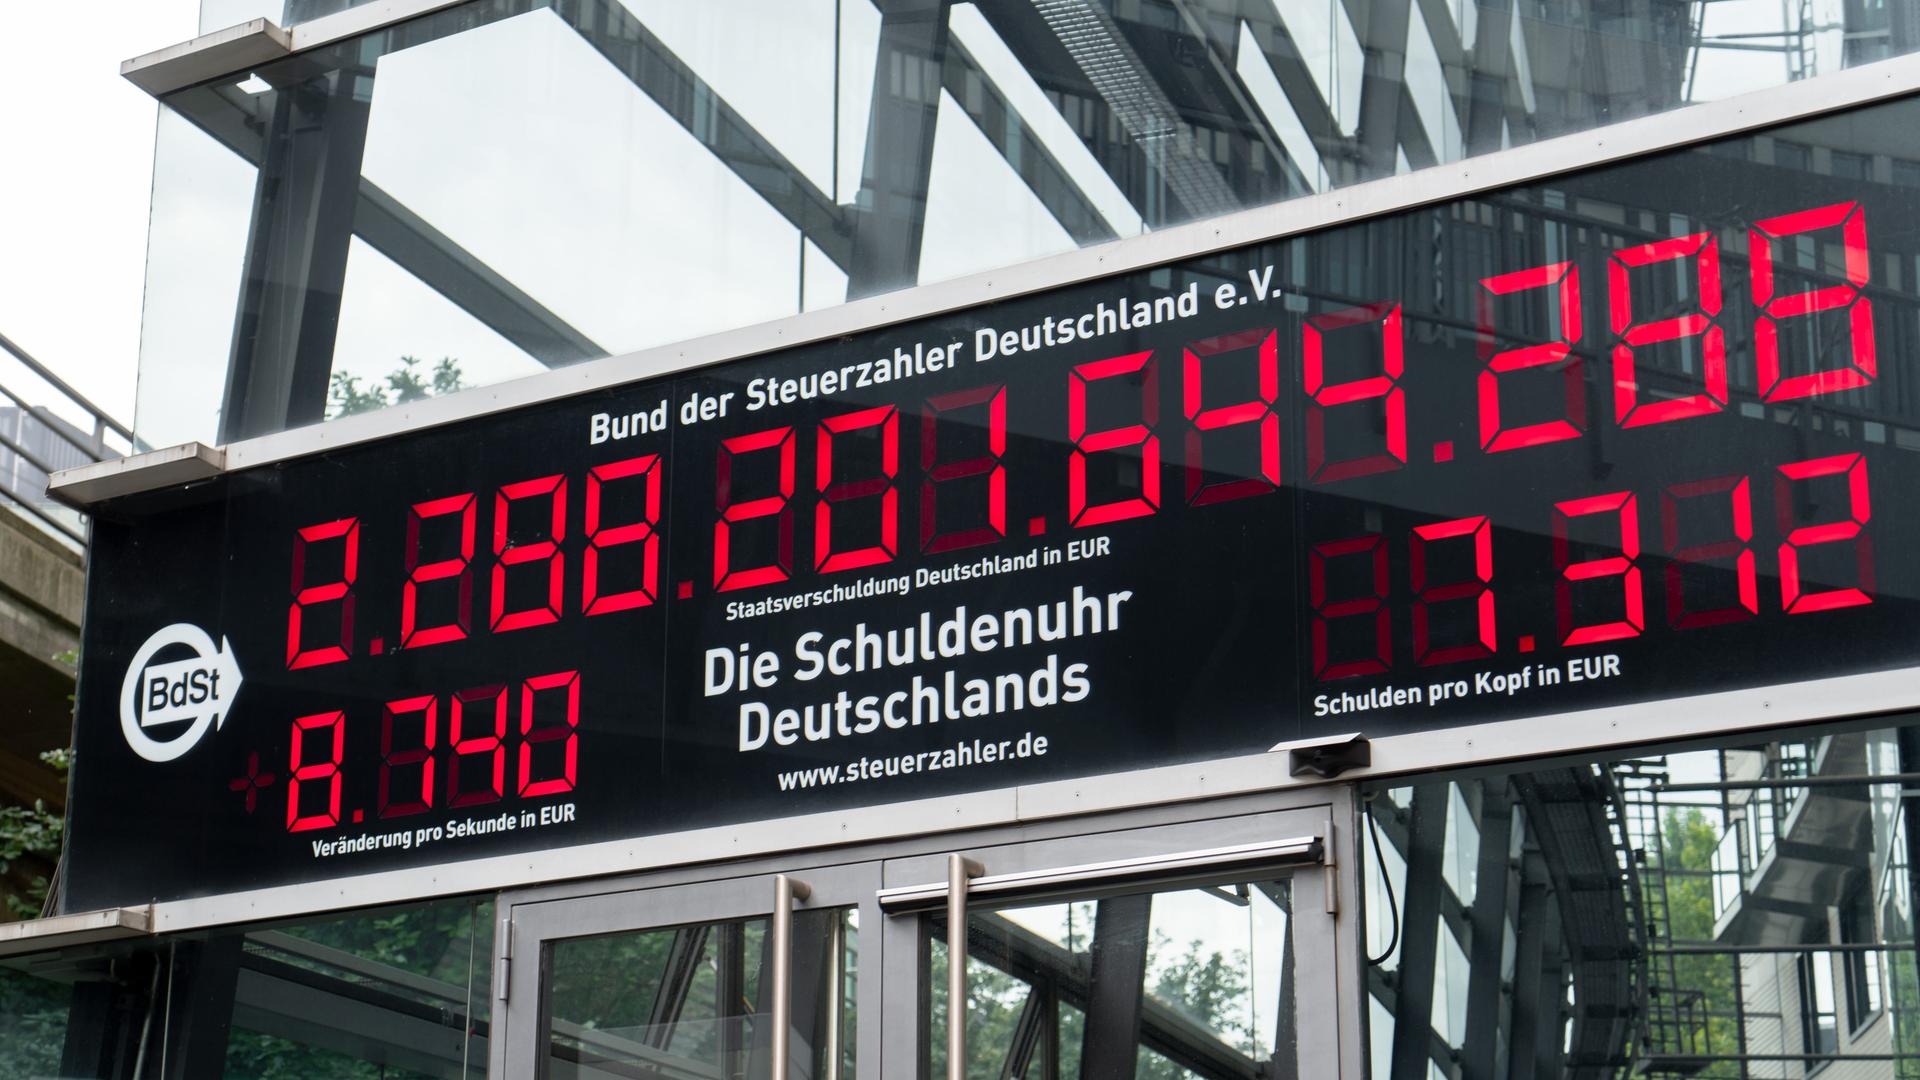 Die Schuldenuhr vom Bund der Steuerzahler Deutschland e.V. in Berlin mit dem Stand vom 19. Juli 2021.